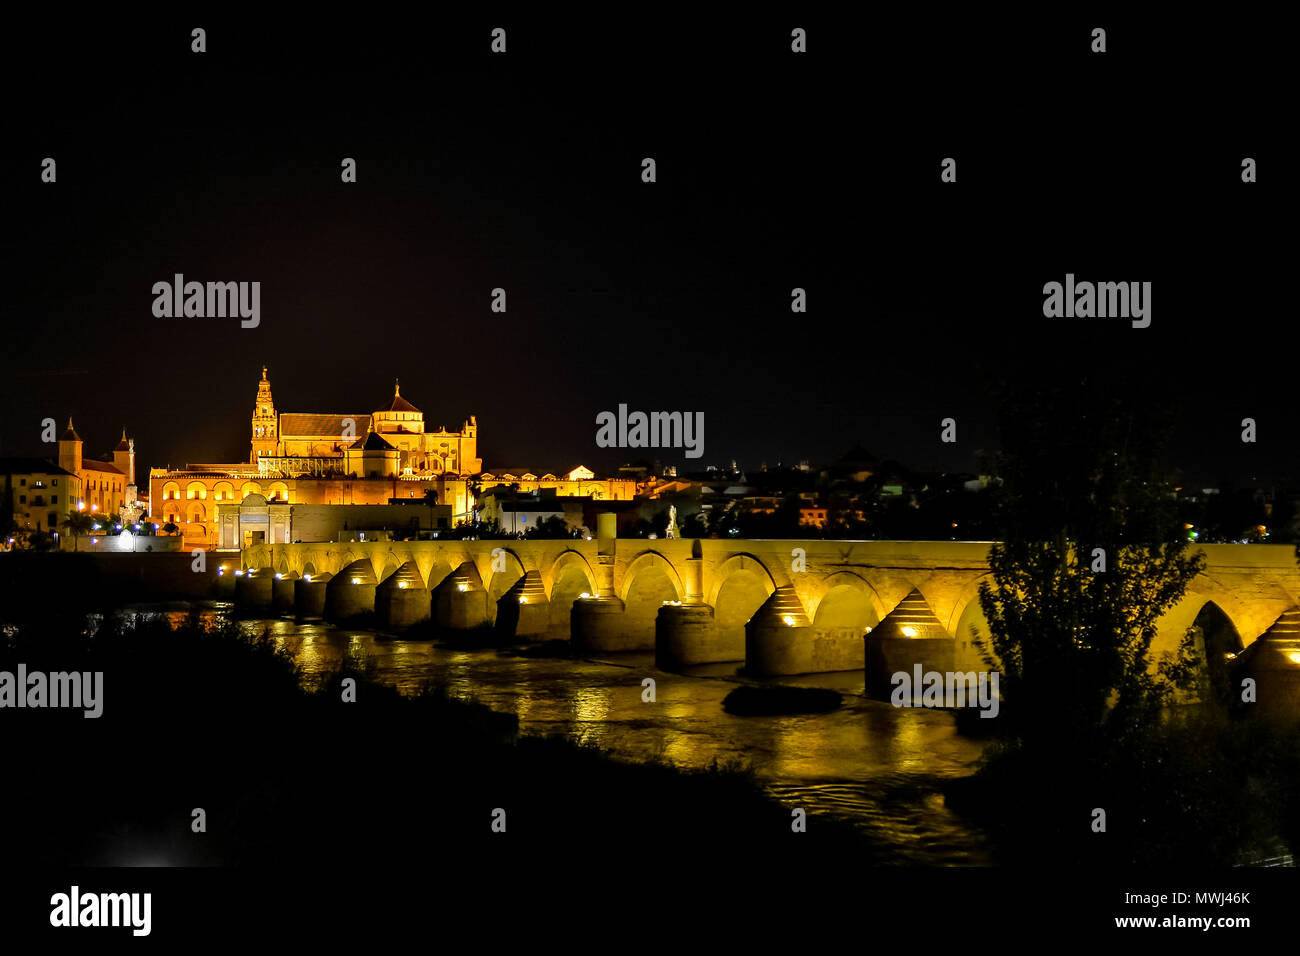 Photo de nuit de la cathédrale de Cordoue et le pont romain sur le Guadalquivir, toutes éclairées par des lampes jaunes et de réverbères Banque D'Images